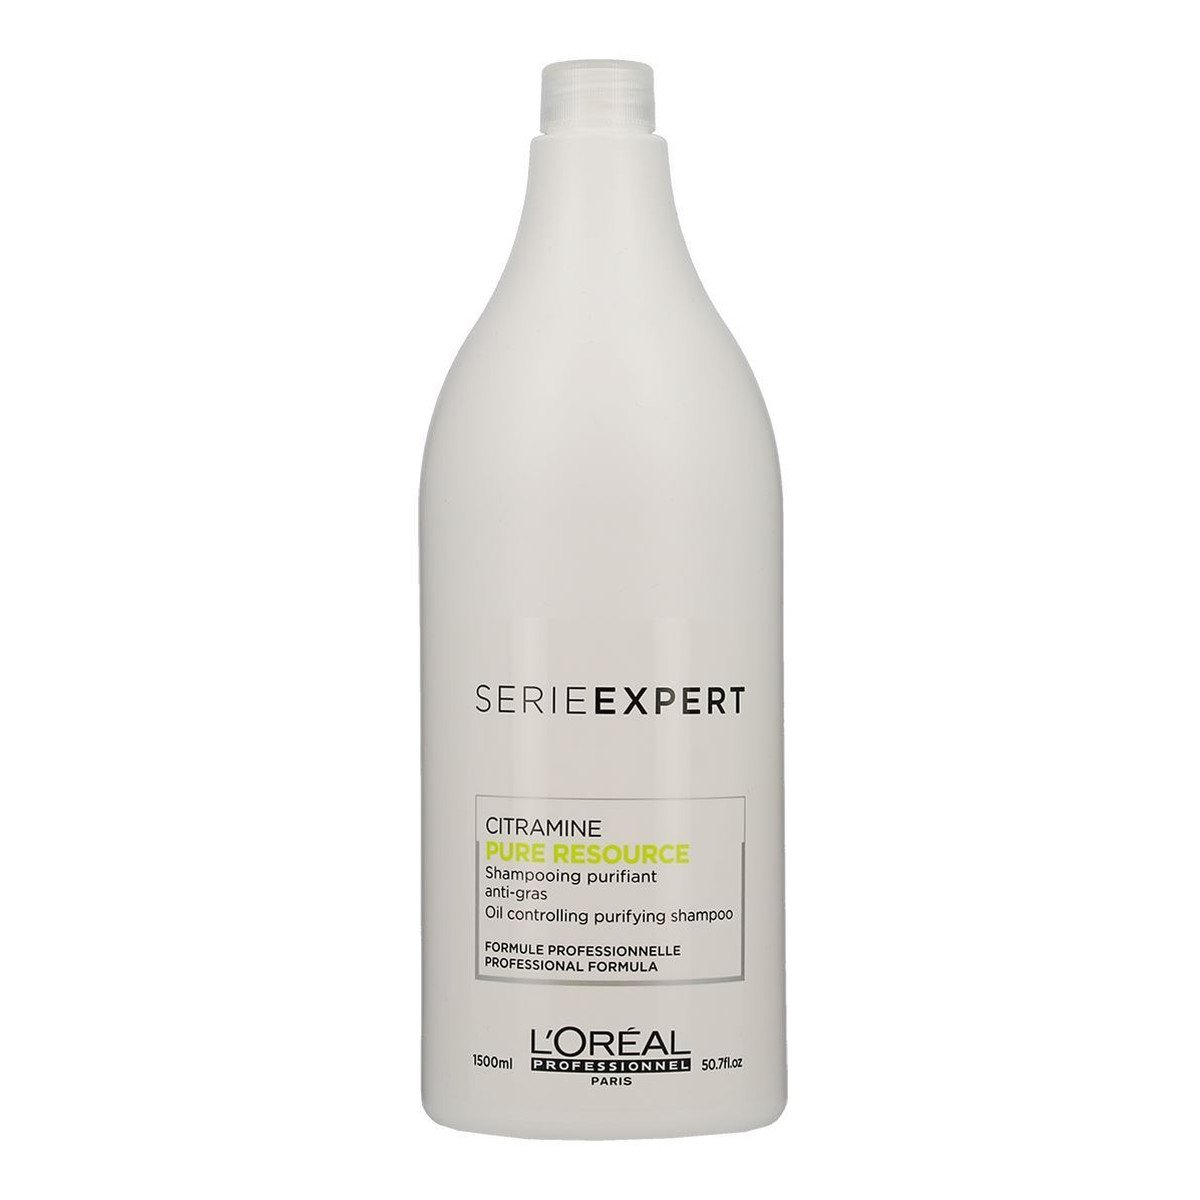 L'Oreal Paris Citramine Pure Resource szampon oczyszczający do włosów przetłuszczających się 1500ml